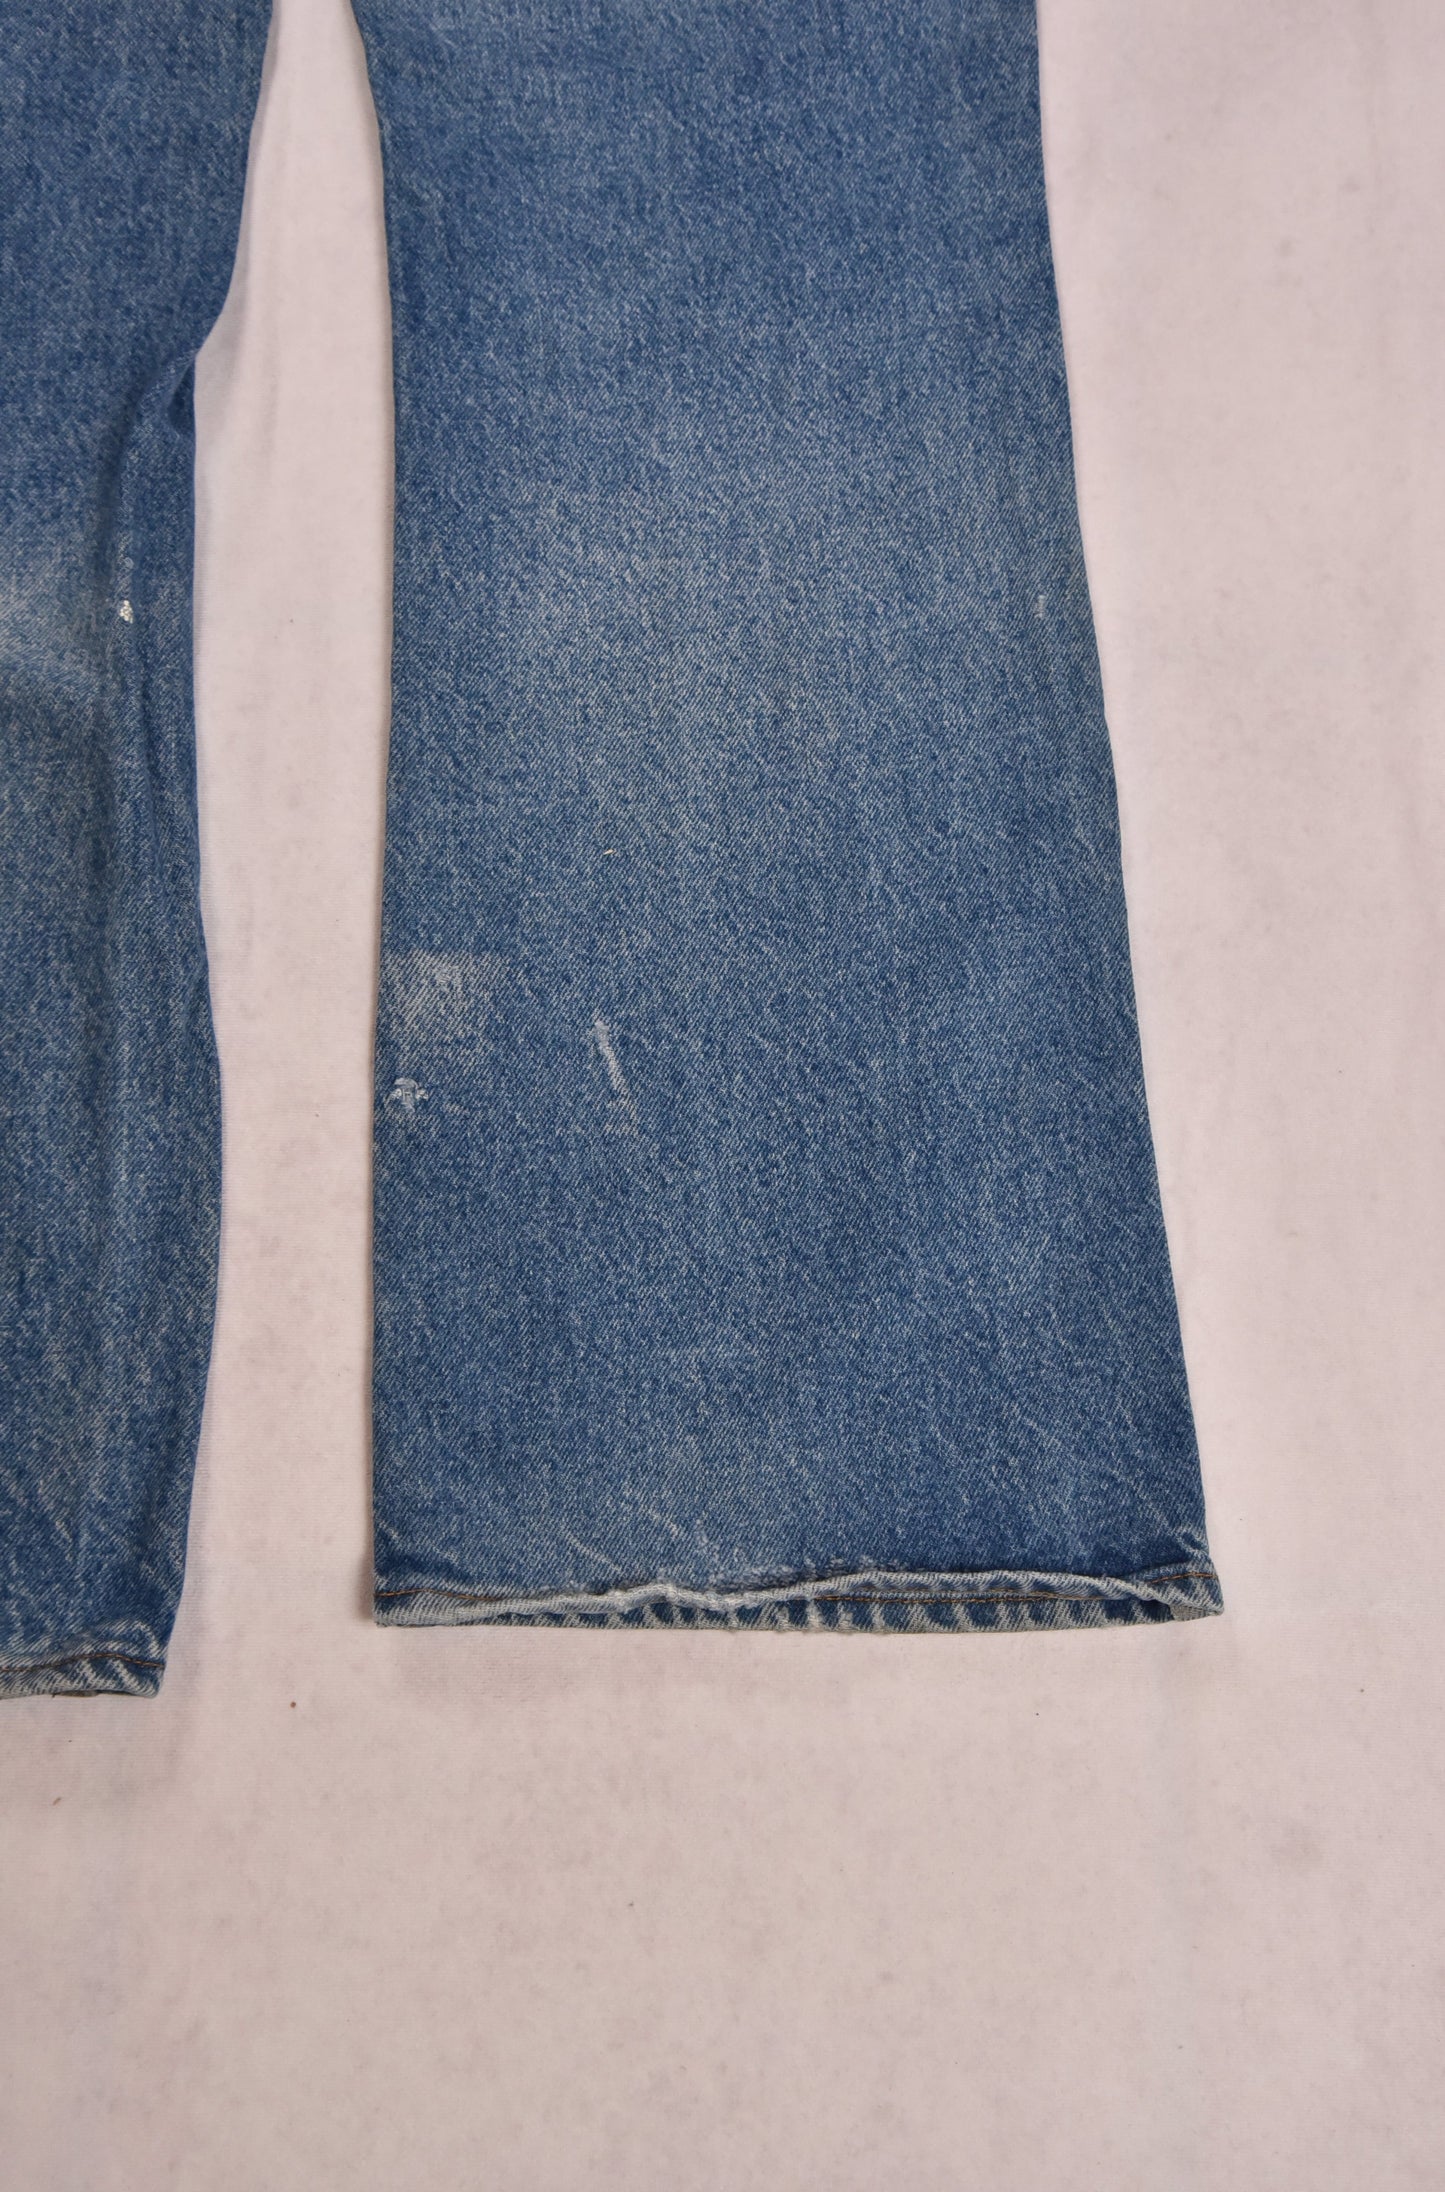 Jeans Levi's 517 con linguetta arancione vintage / 36x33